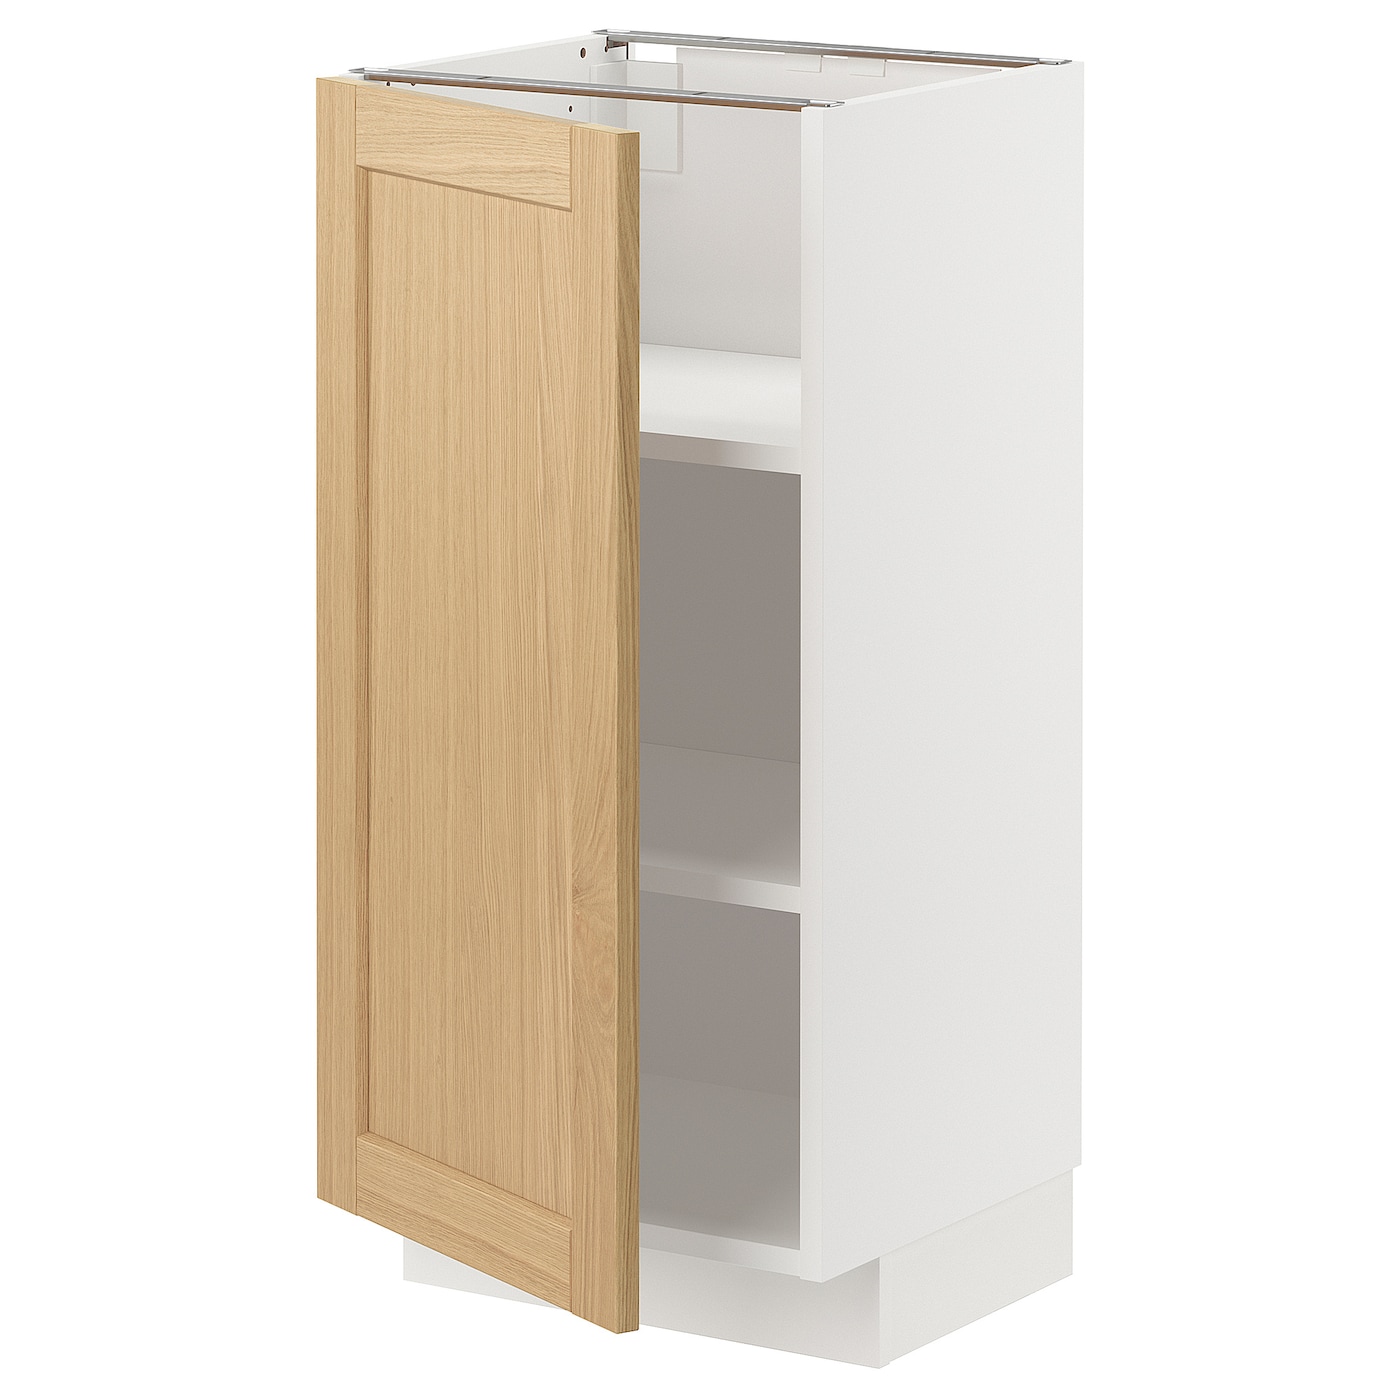 Напольный шкаф - METOD IKEA/ МЕТОД ИКЕА,  40х37 см, белый/под беленый дуб